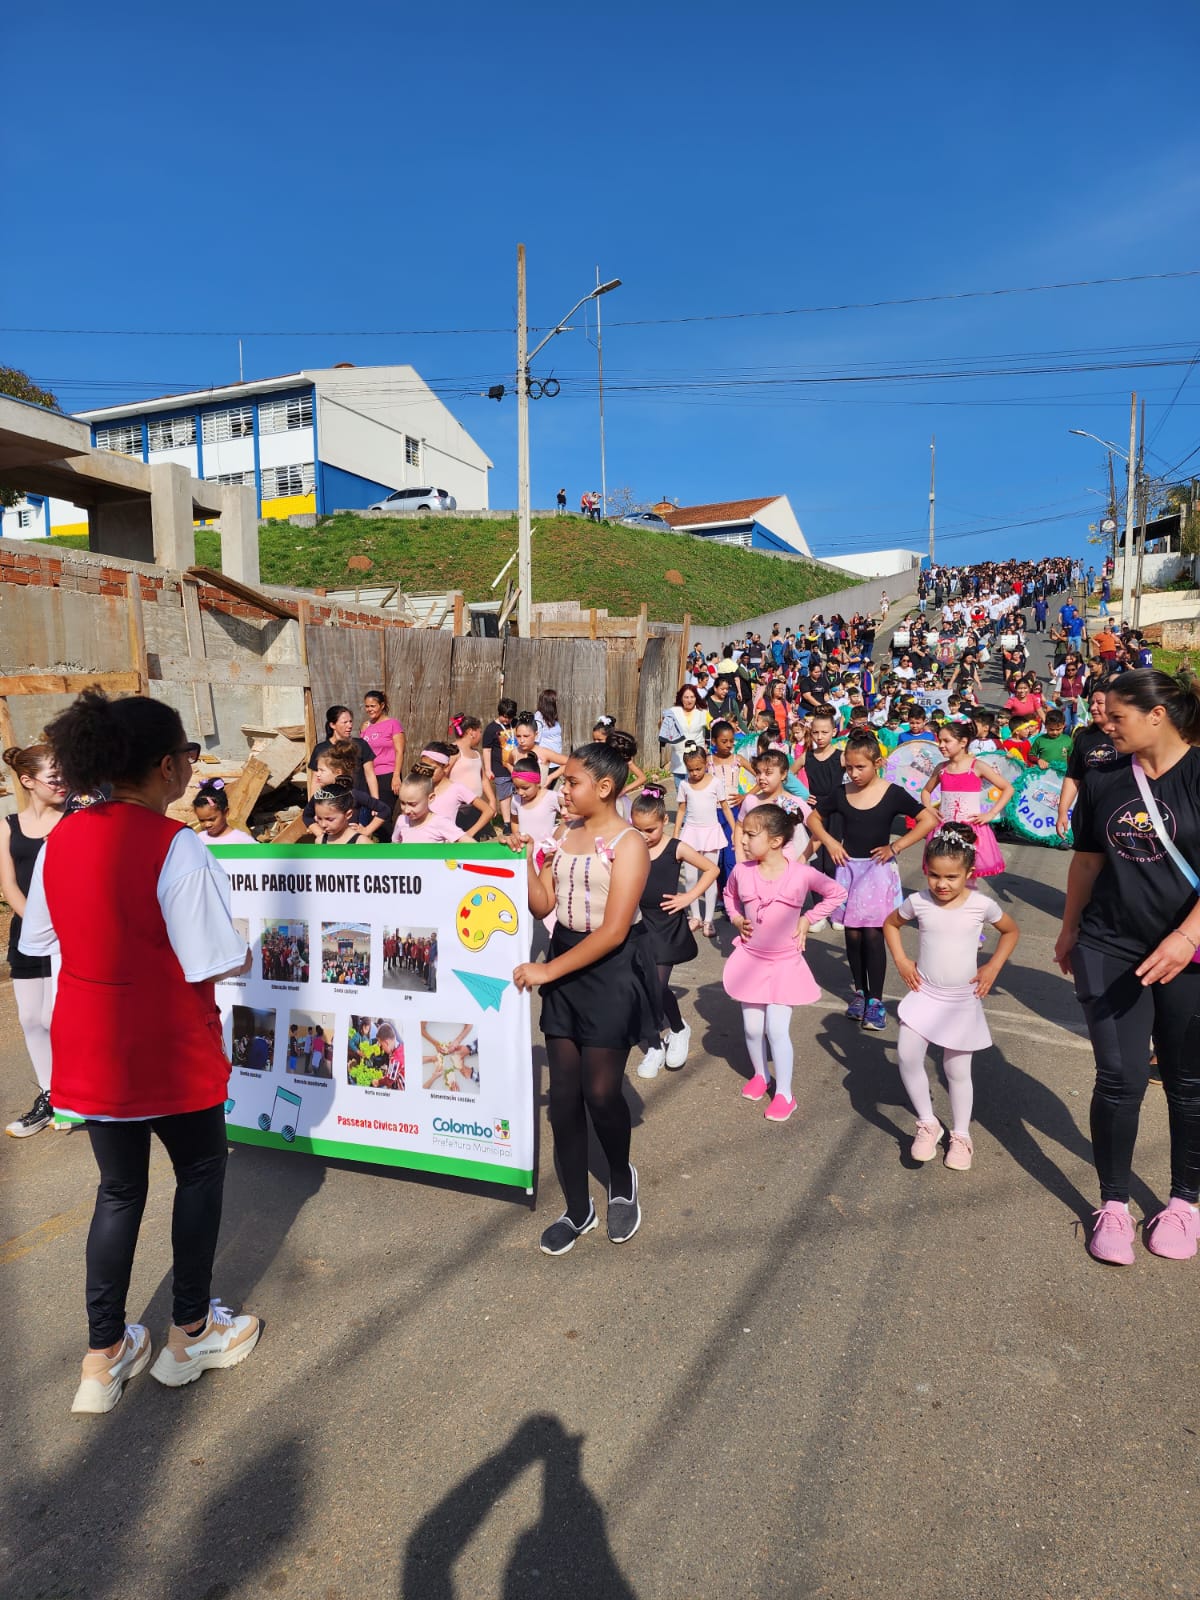 Desfiles cívicos promovidos pela Prefeitura de Colombo têm início no Bairro Monte Castelo